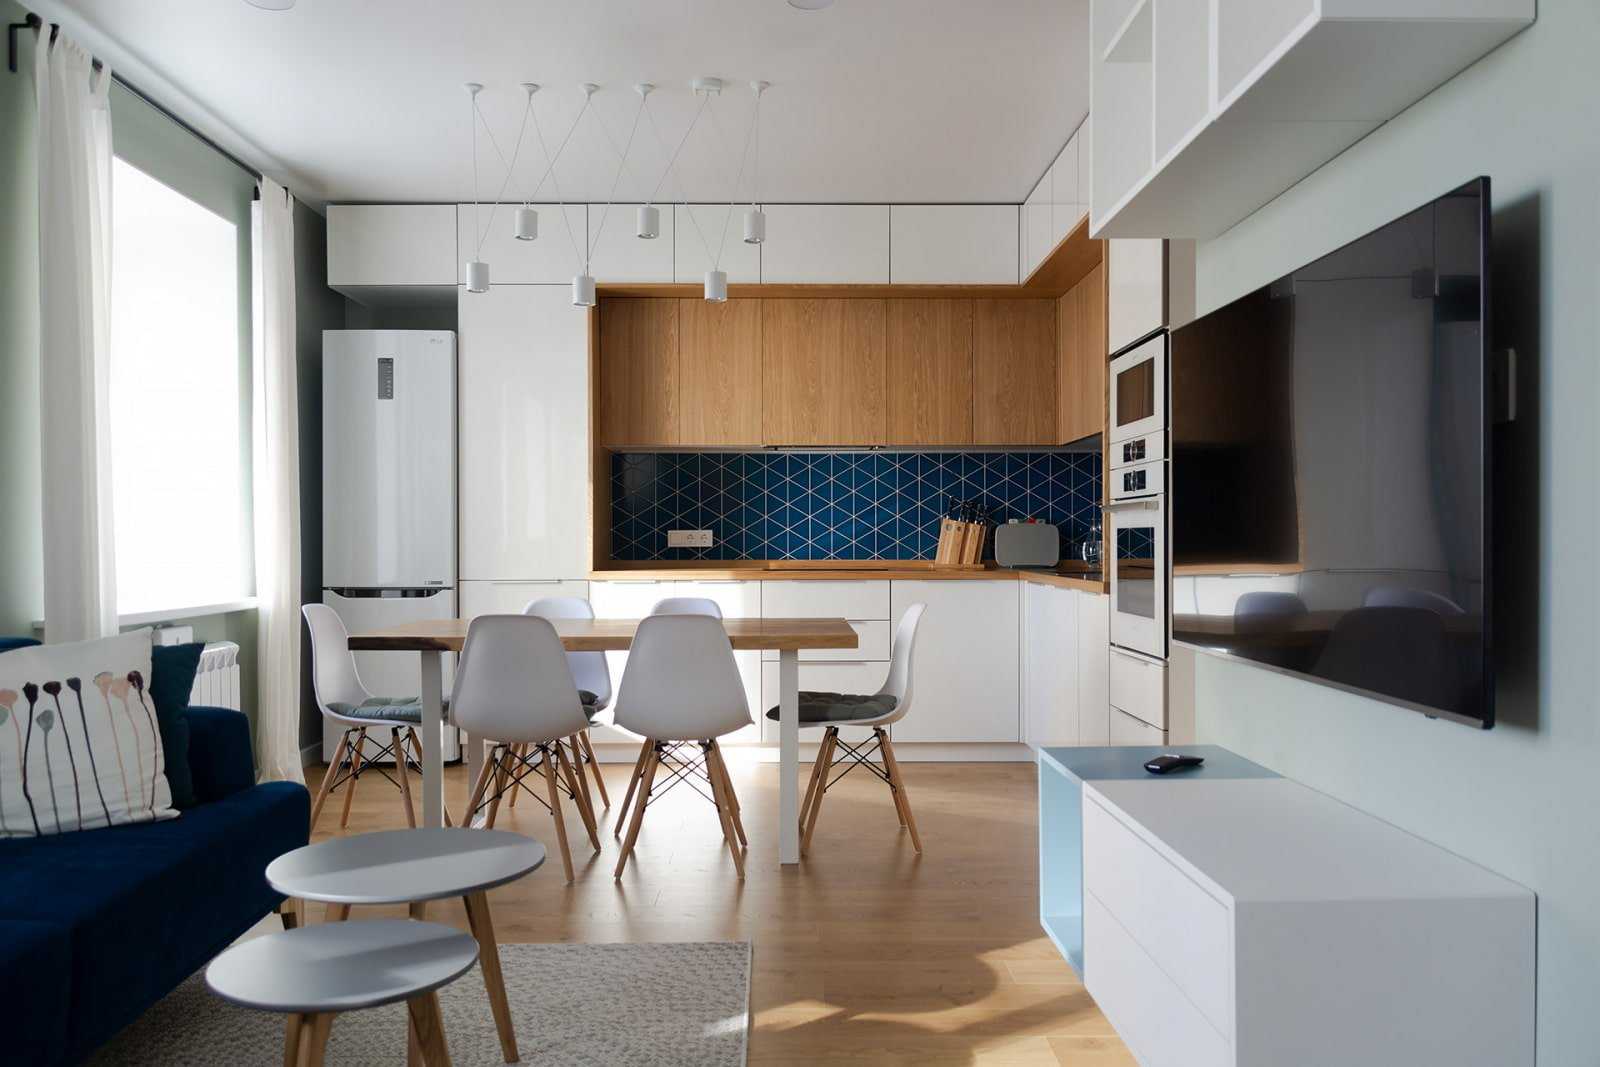 Кухнягостиная 22 кв м дизайн, фото всей комнаты Выбор подходящего стиля и способы зонирования пространства в кухнегостиной Советы дизайнеров по созданию интерьера